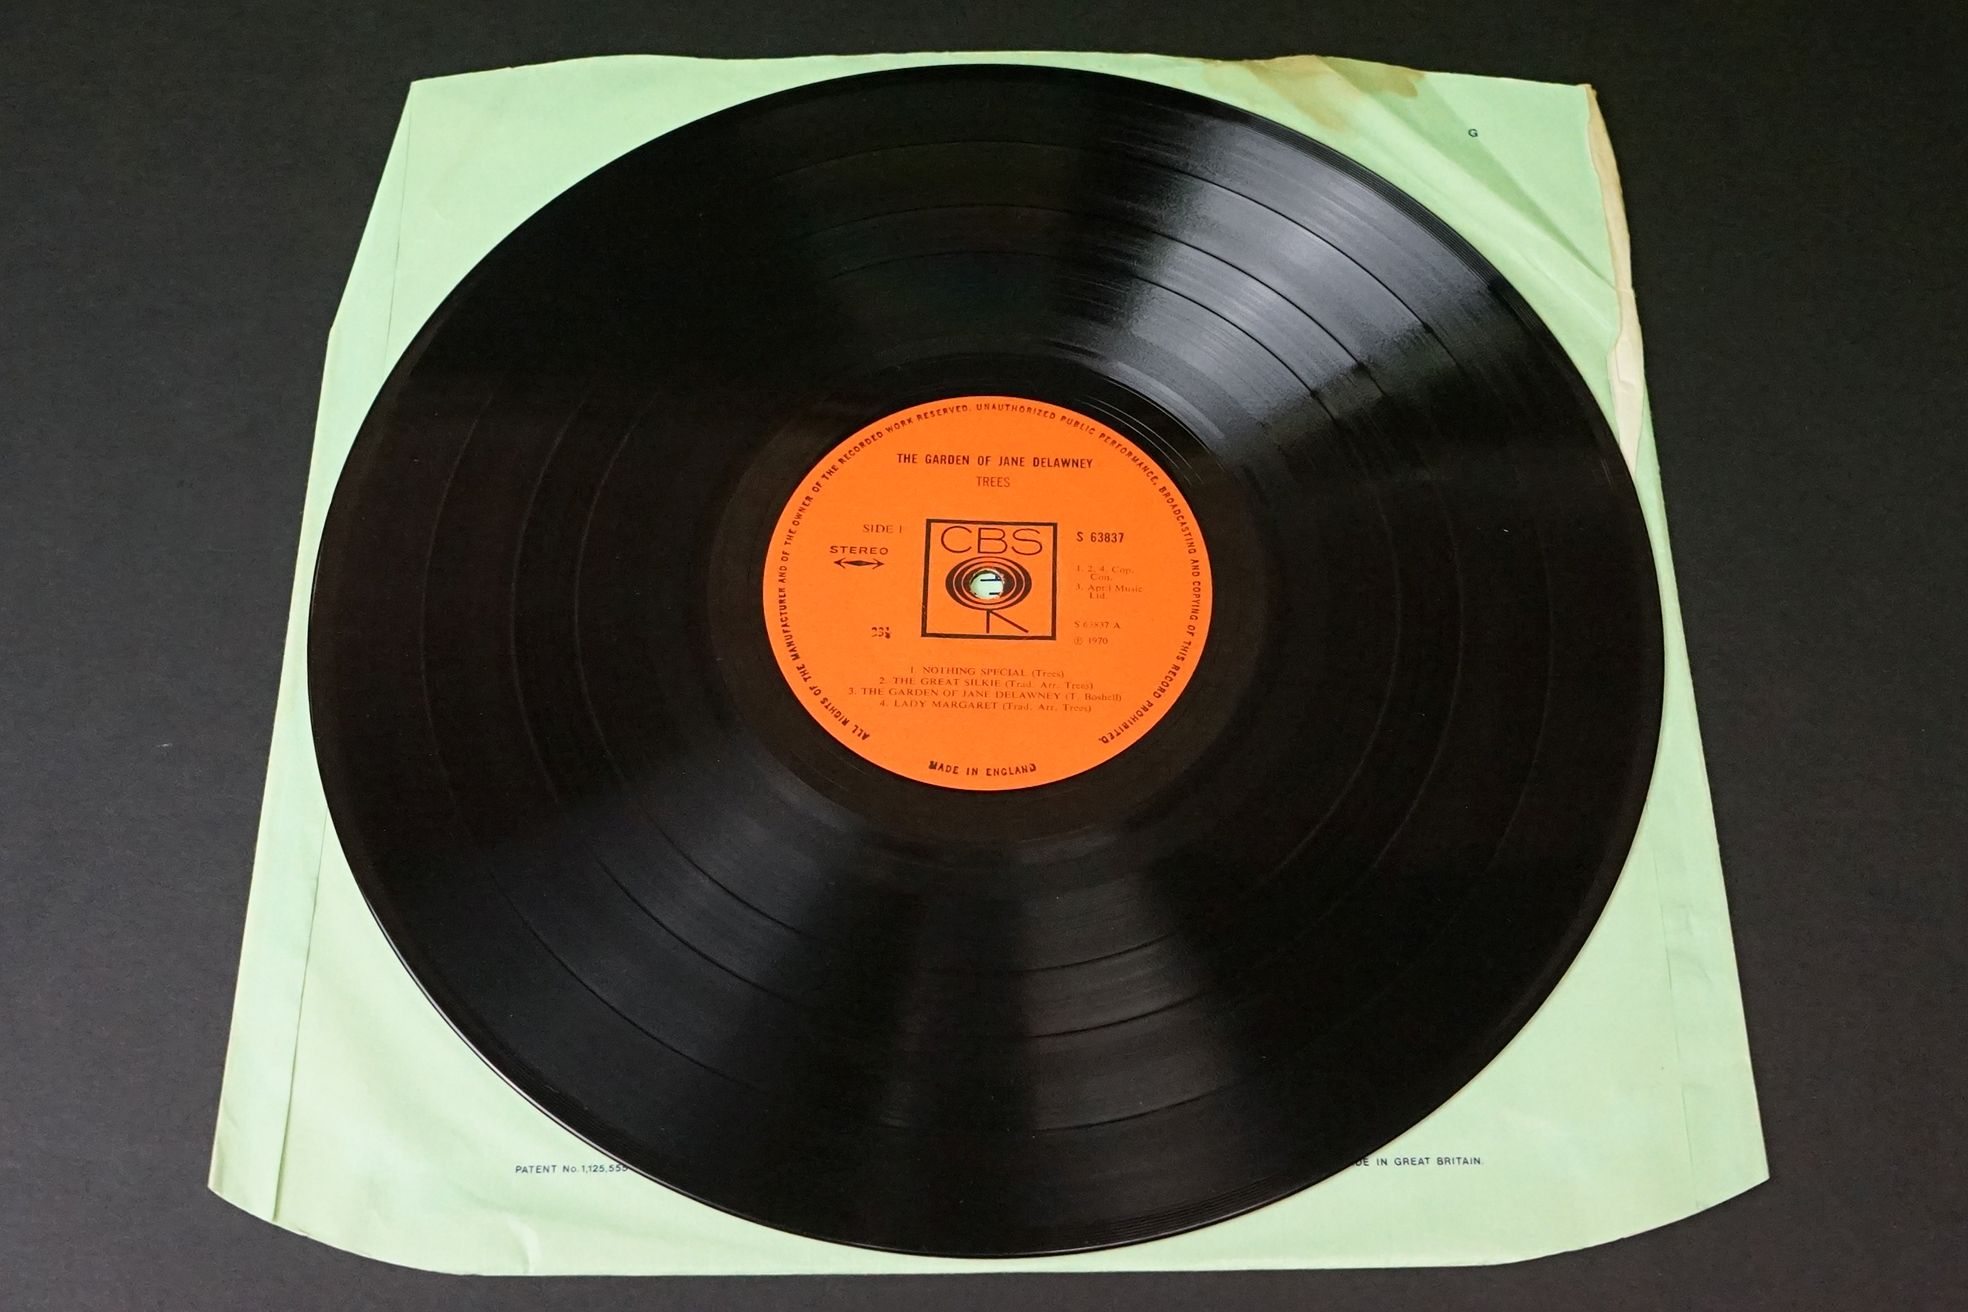 Vinyl - Trees The Garden Of Jane Delawney on CBS 63837 Stereo. Sleeve & Vinyl Vg+ - Image 2 of 6